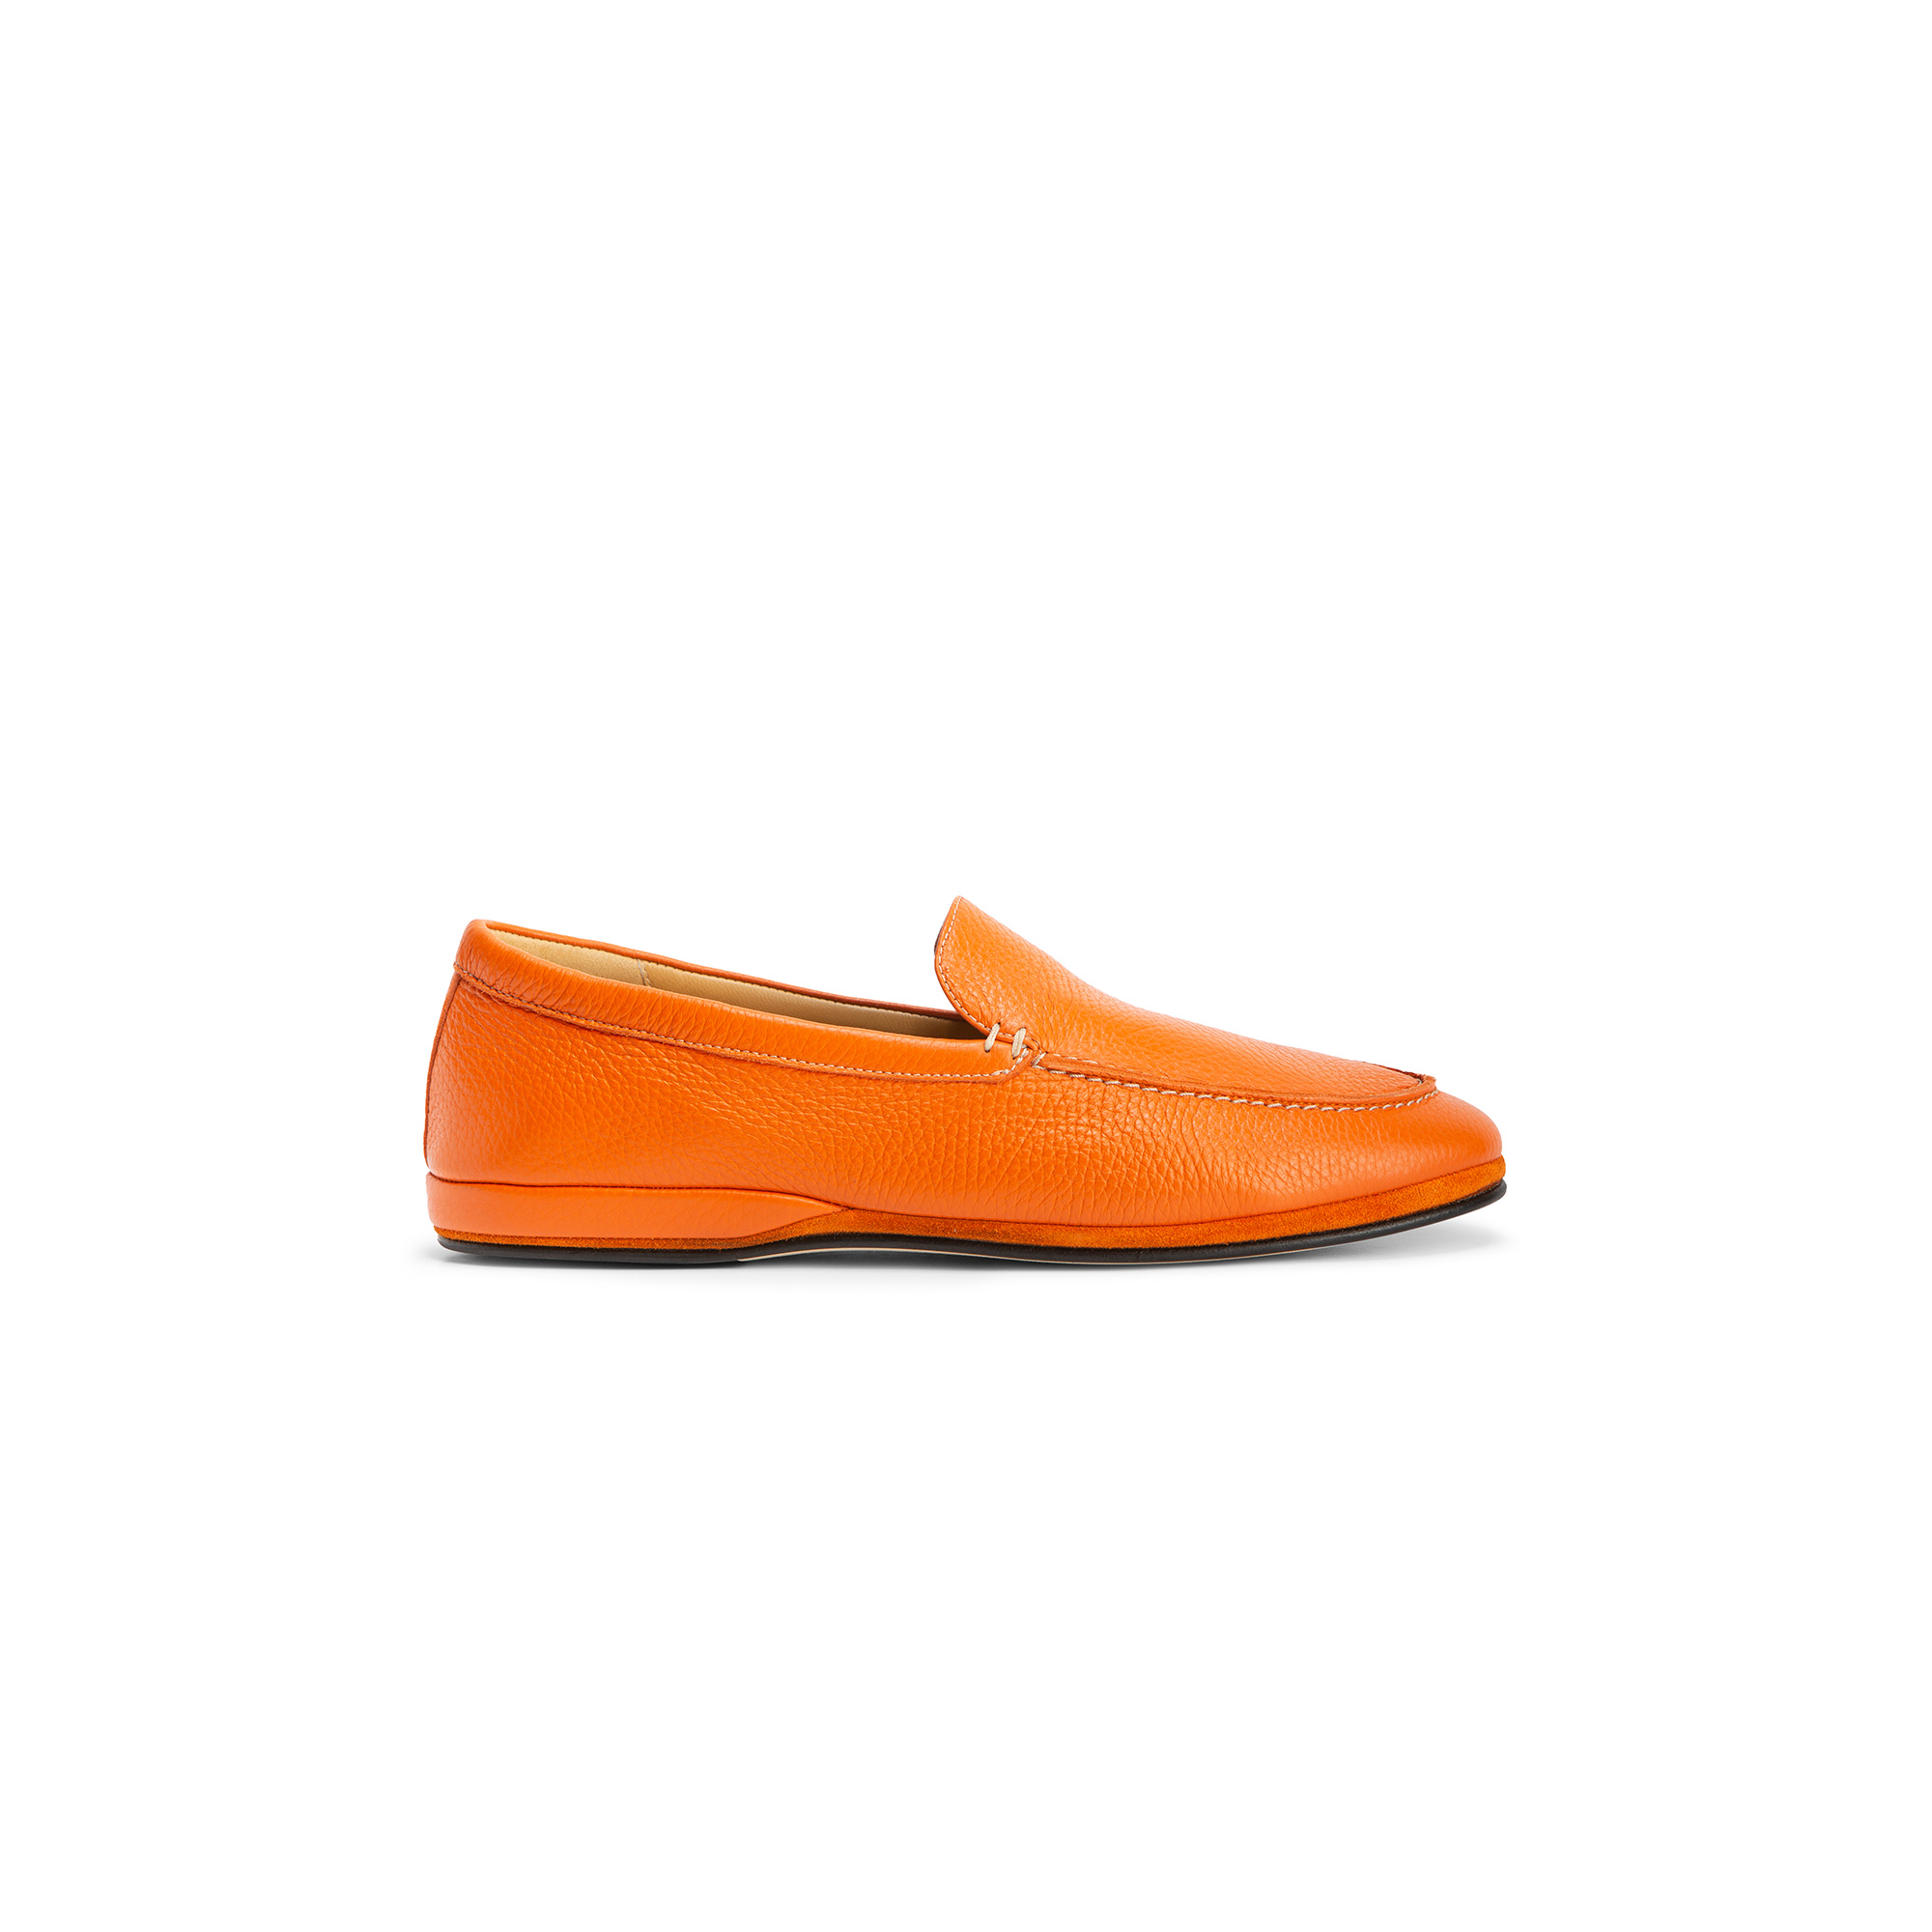 Outside closed orange deer leather slipper - Farfalla italian slippers